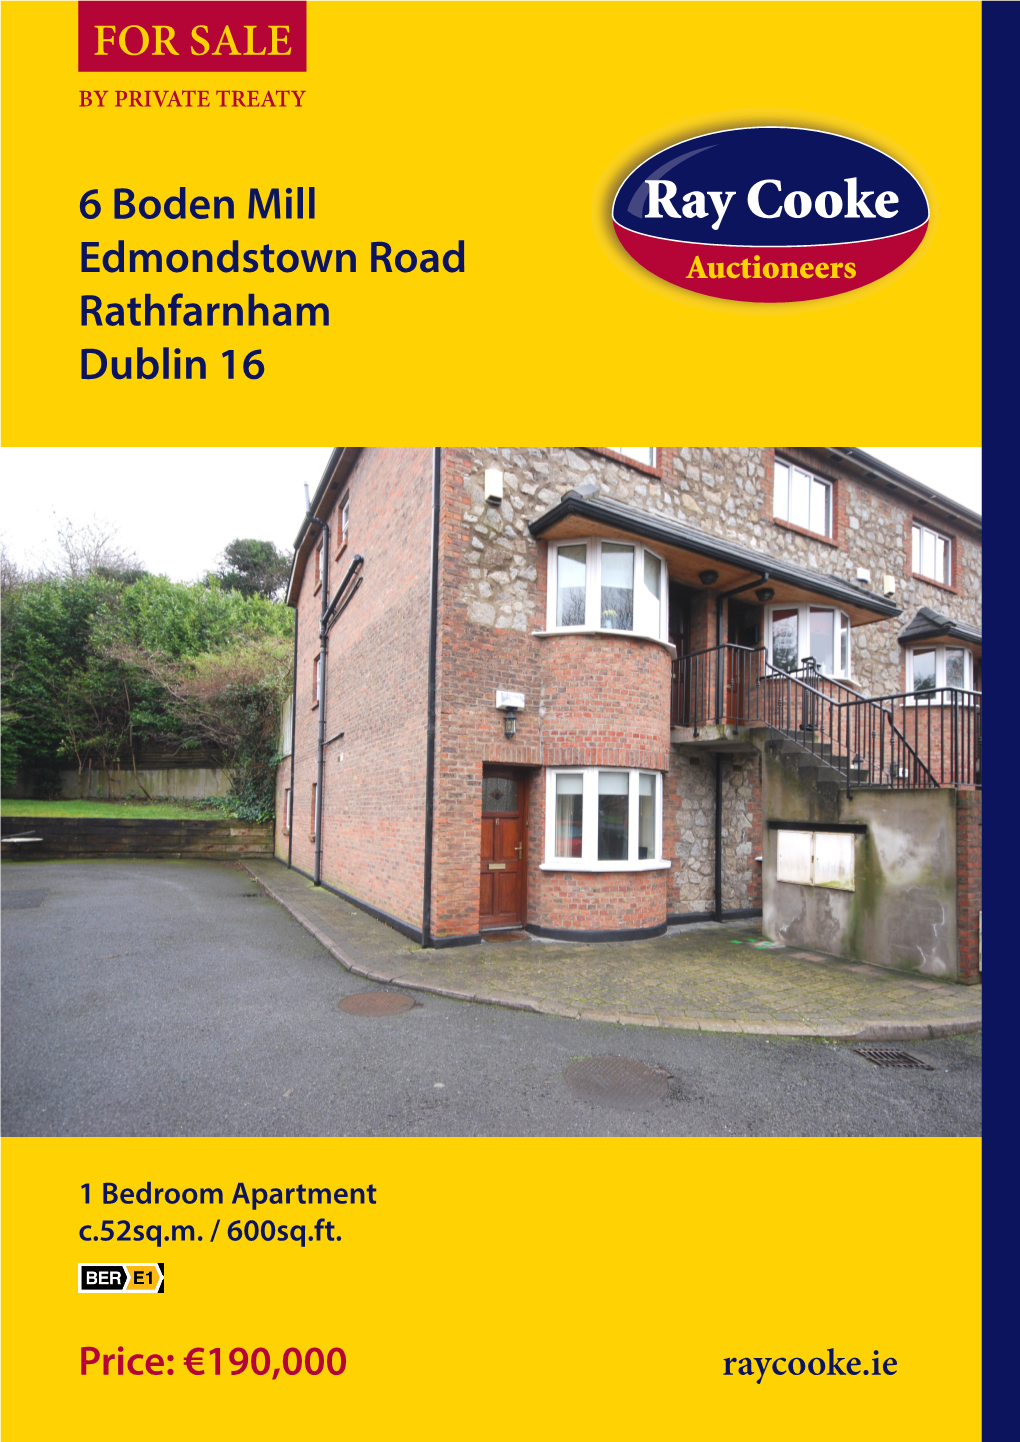 6 Boden Mill Edmondstown Road Rathfarnham Dublin 16 for SALE